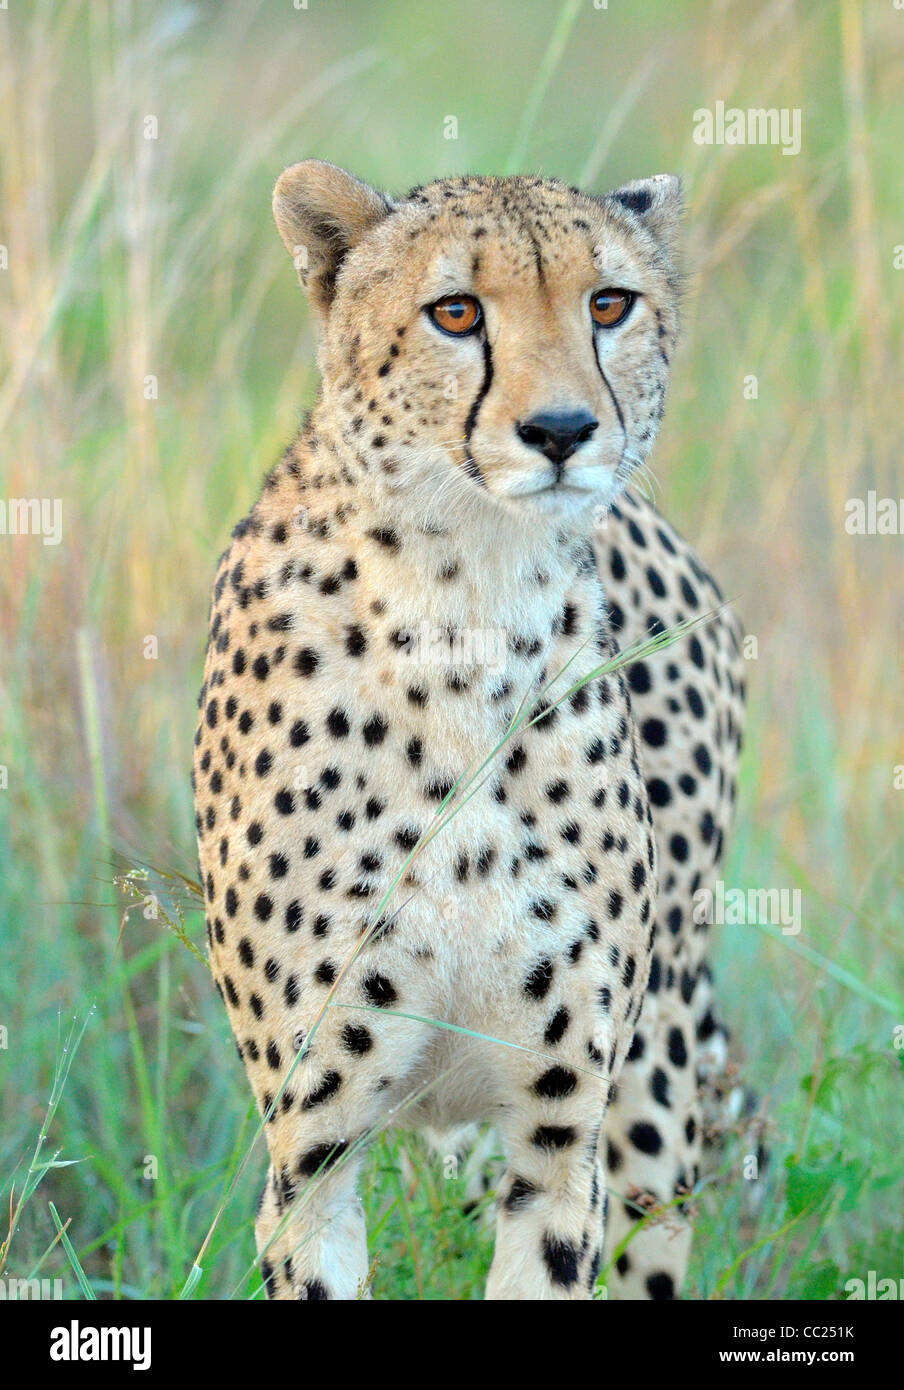 Krüger Nationalpark in Südafrika ist weltweit bekannt für Do it yourself Tierbeobachtungen zu erschwinglichen Preisen. Stockfoto